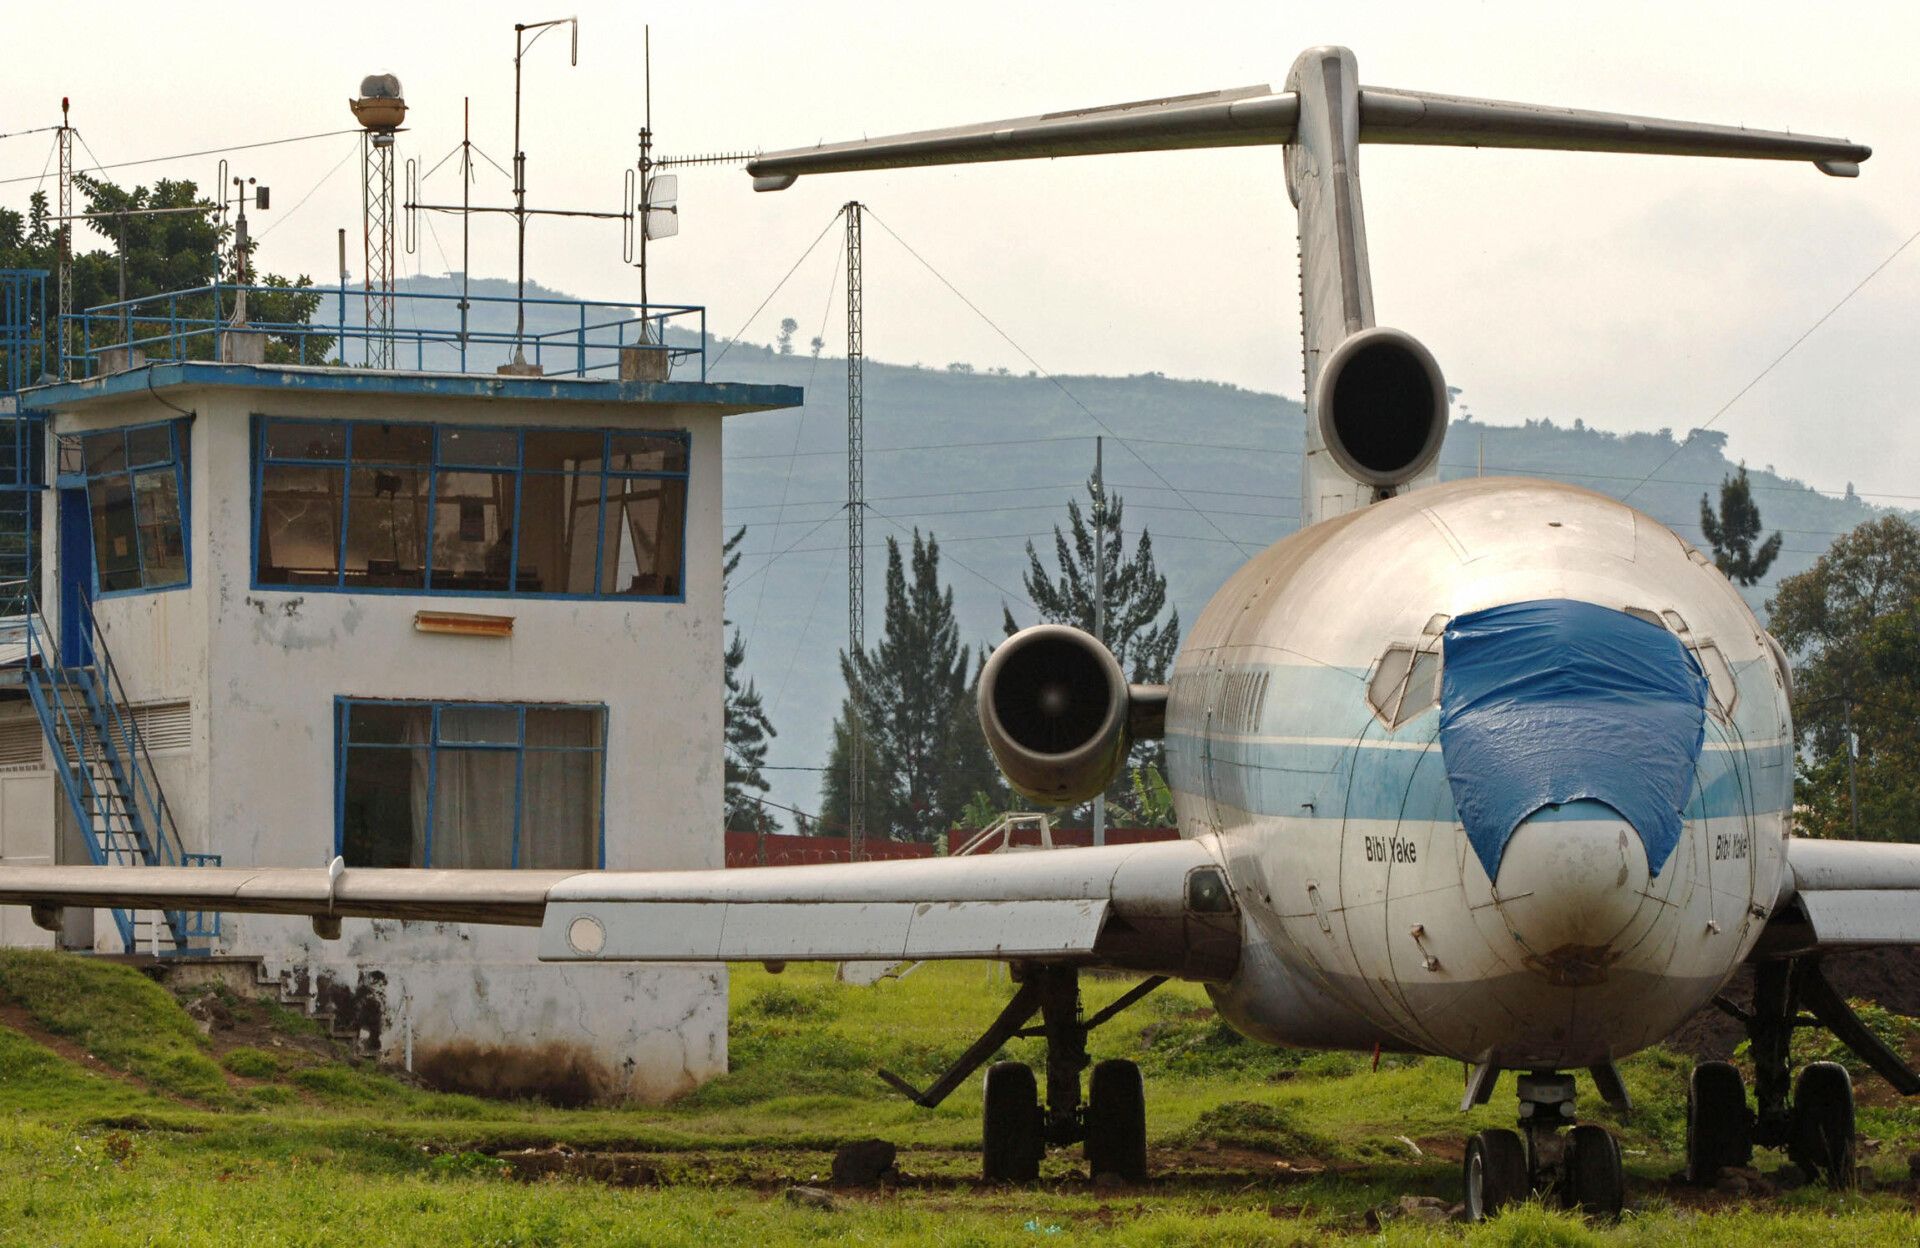 Congo Goma Airport Plane getty